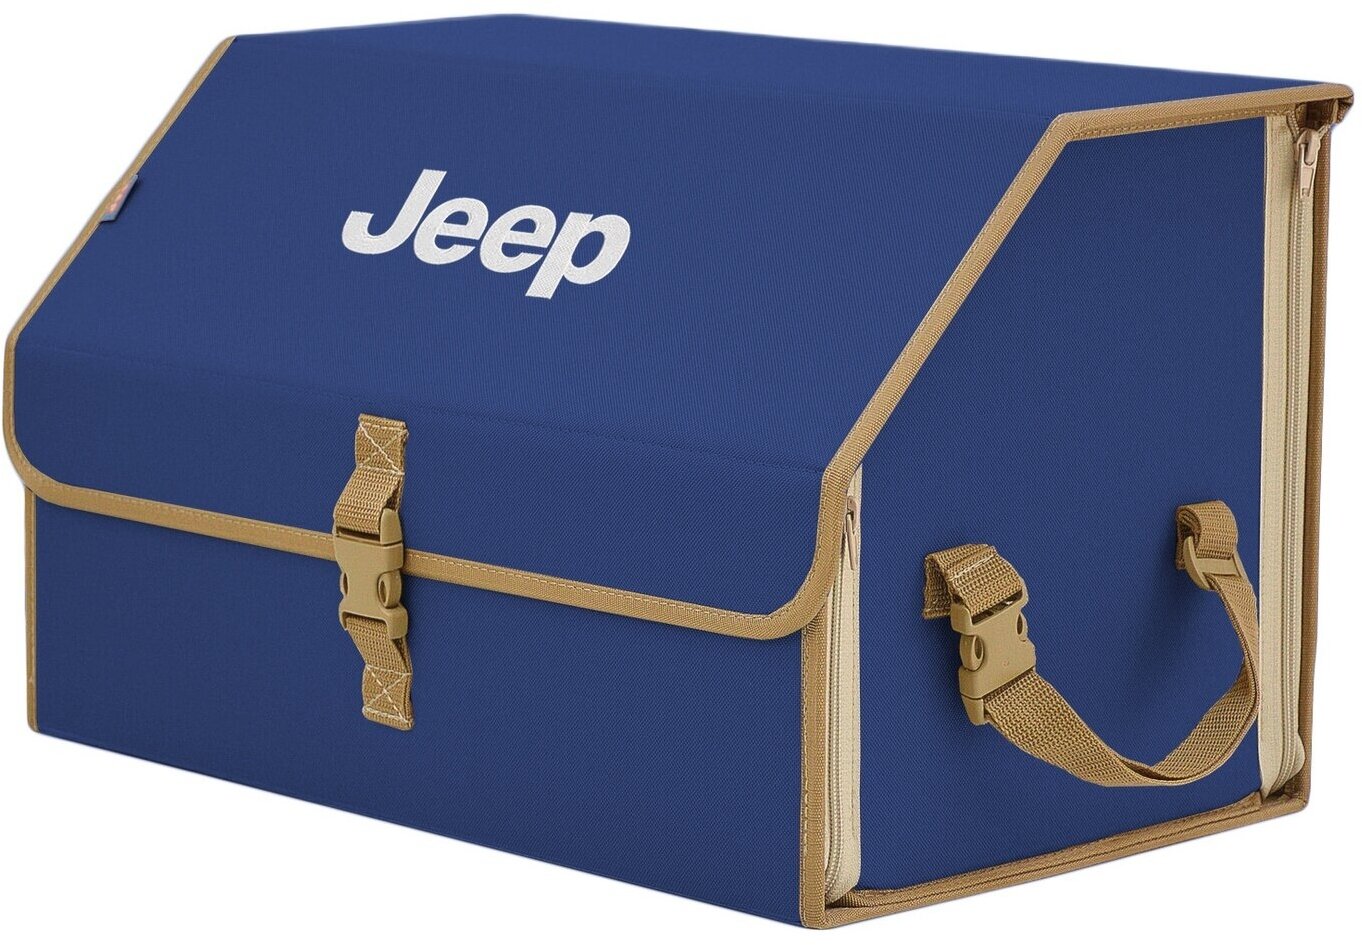 Органайзер-саквояж в багажник "Союз" (размер L). Цвет: синий с бежевой окантовкой и вышивкой Jeep (Джип).